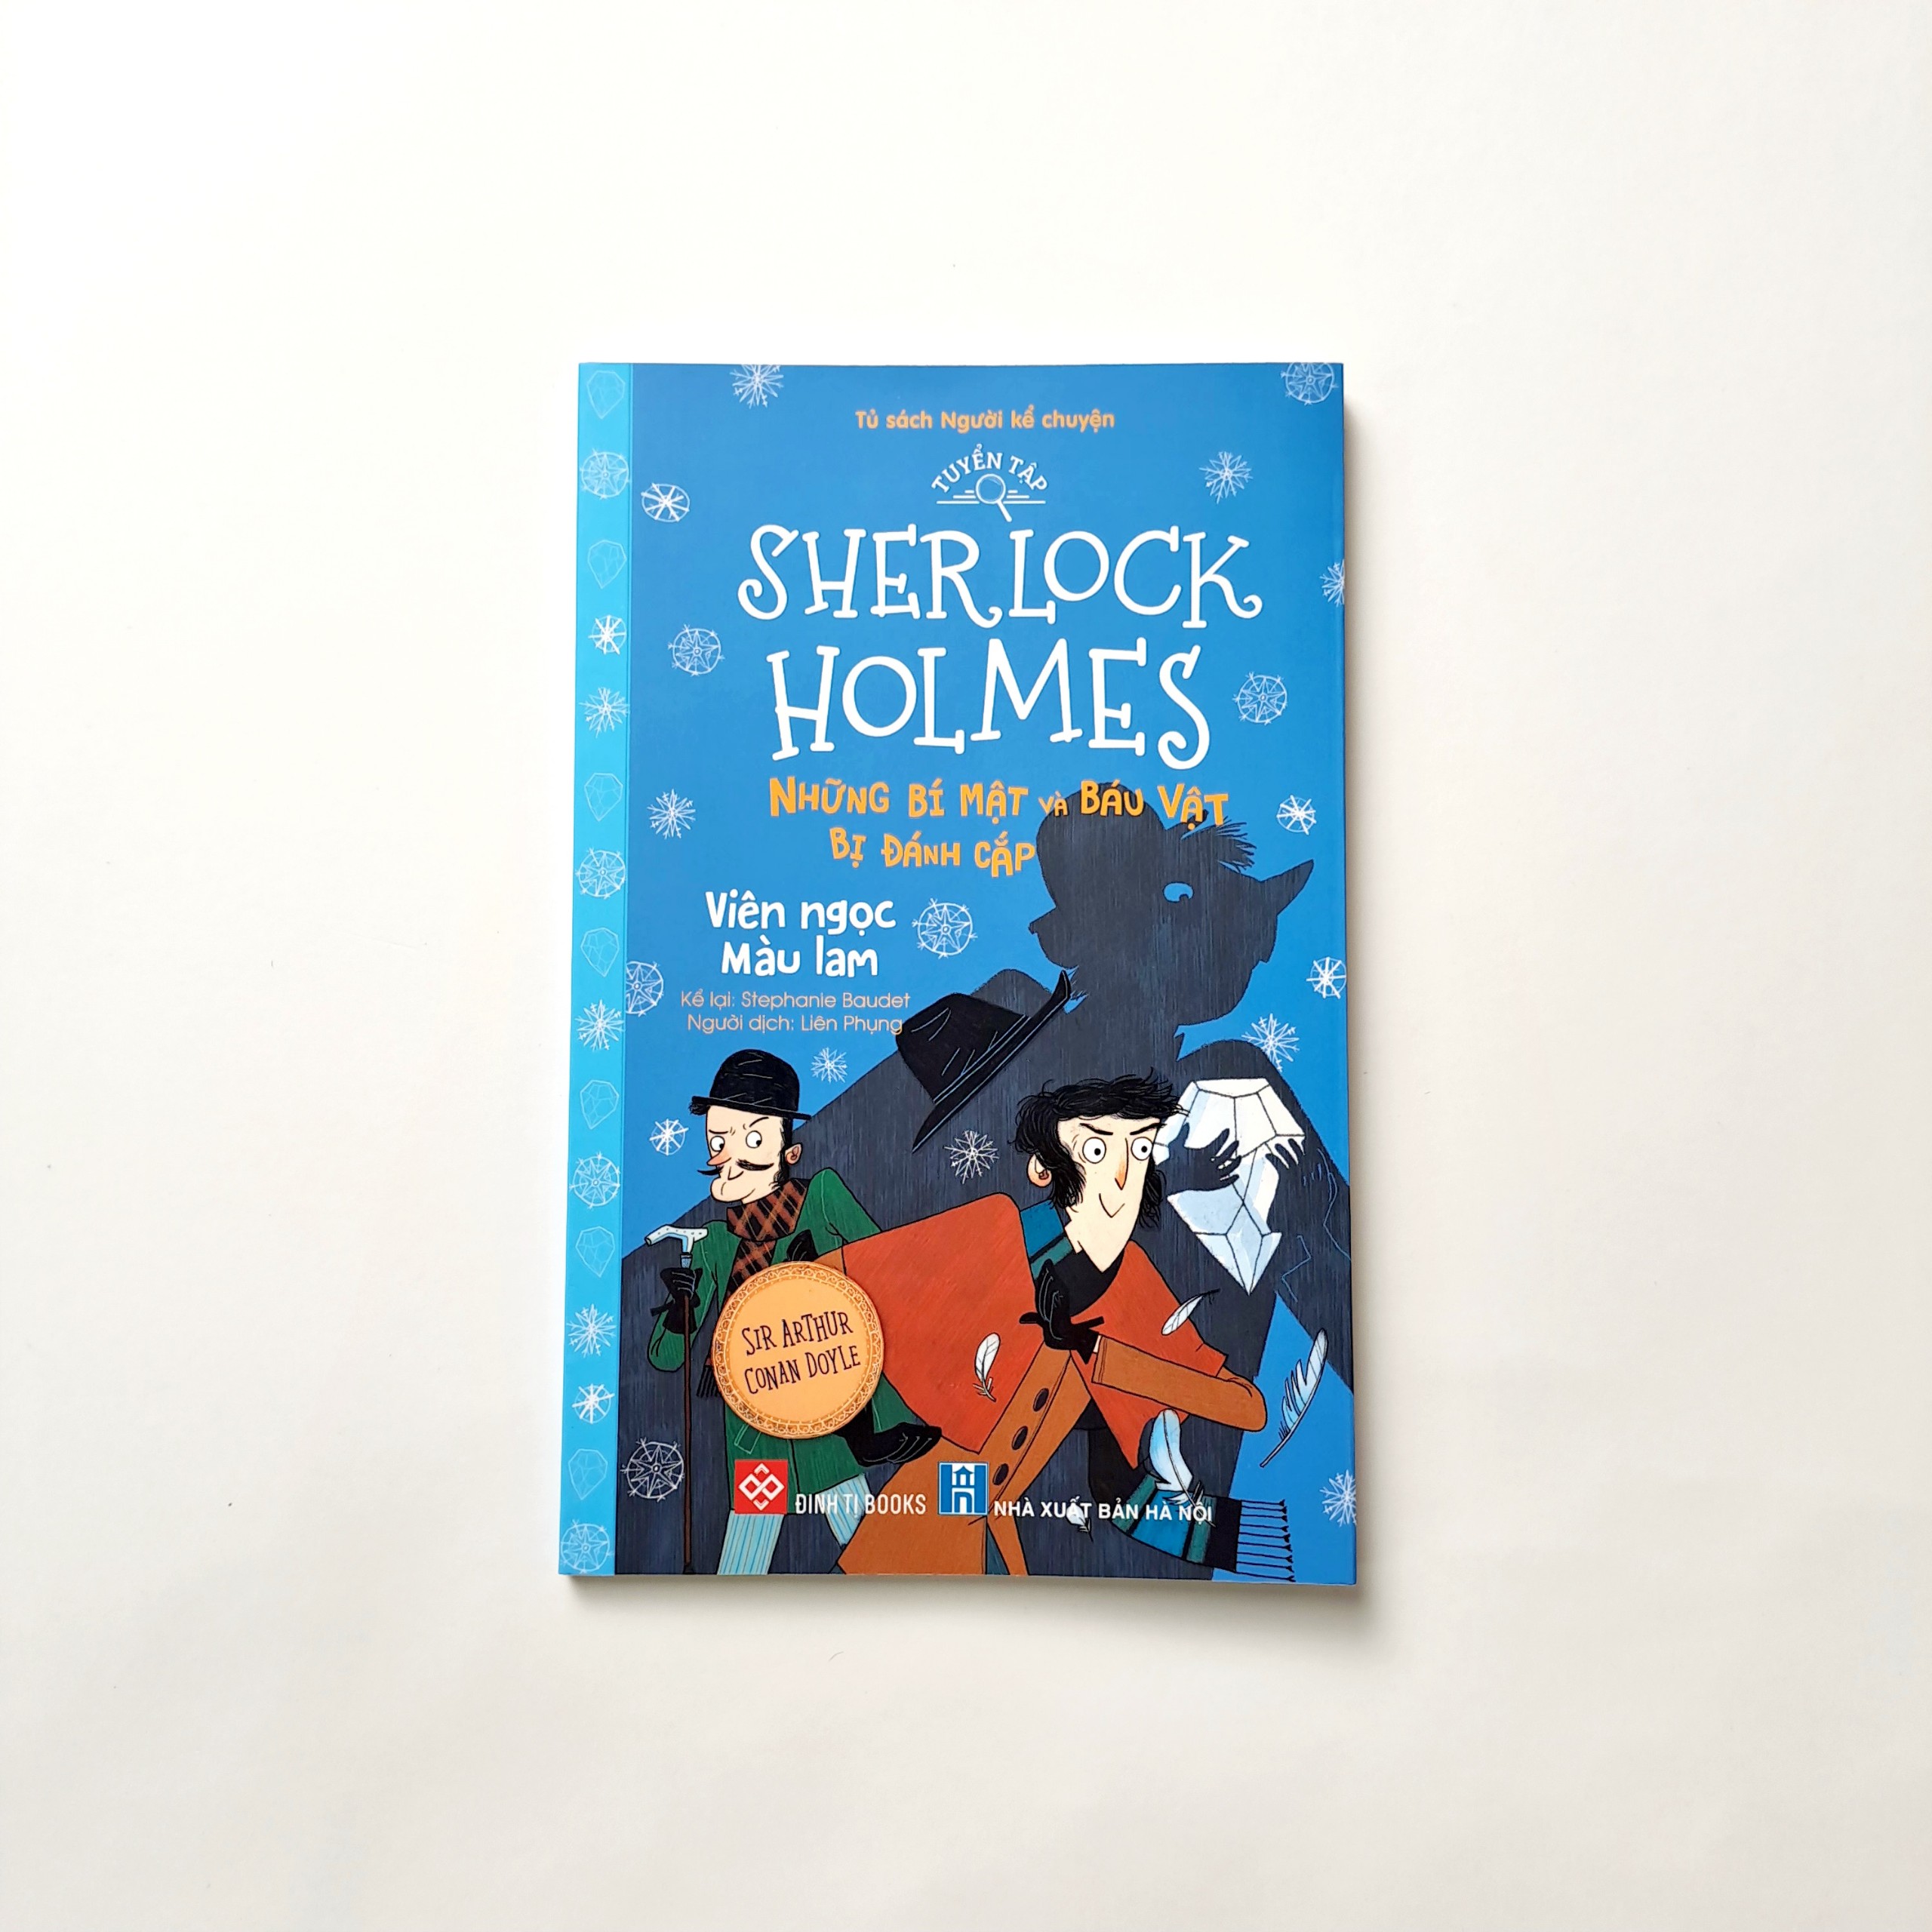 Sách - Tuyển tập Sherlock Holmes - Những bí mật và báu vật bị đánh cắp (10 tập) - Đinh Tị Books